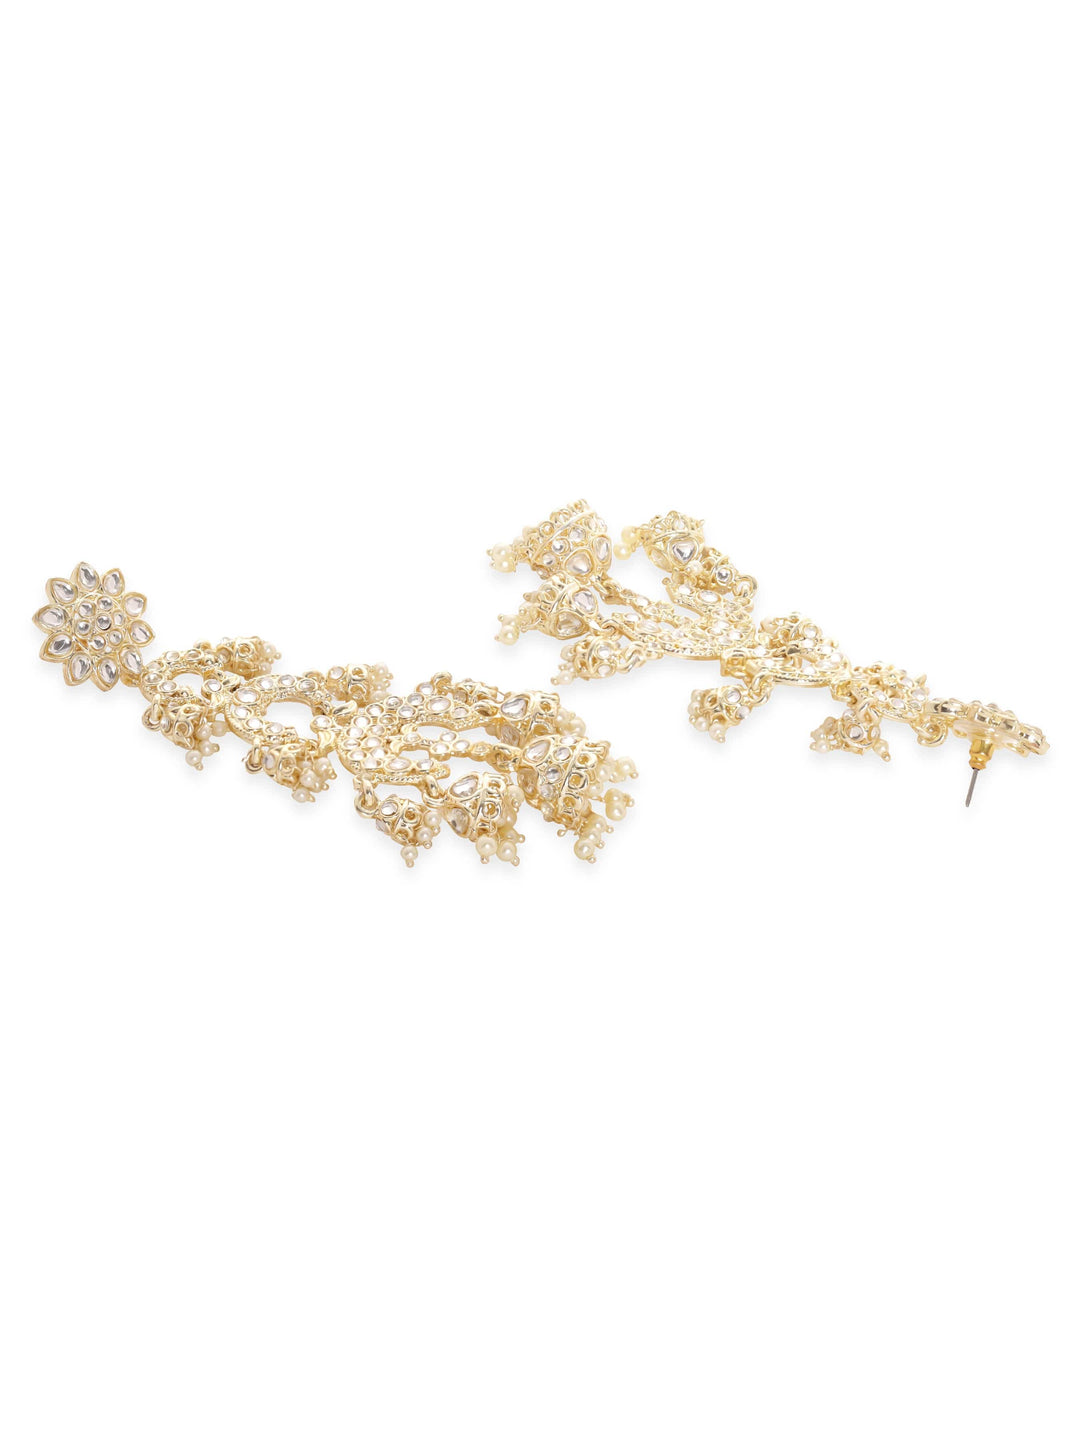 Rubans 22K Gold plated Pearl beaded Kundan Long Dangling Earrings Earrings